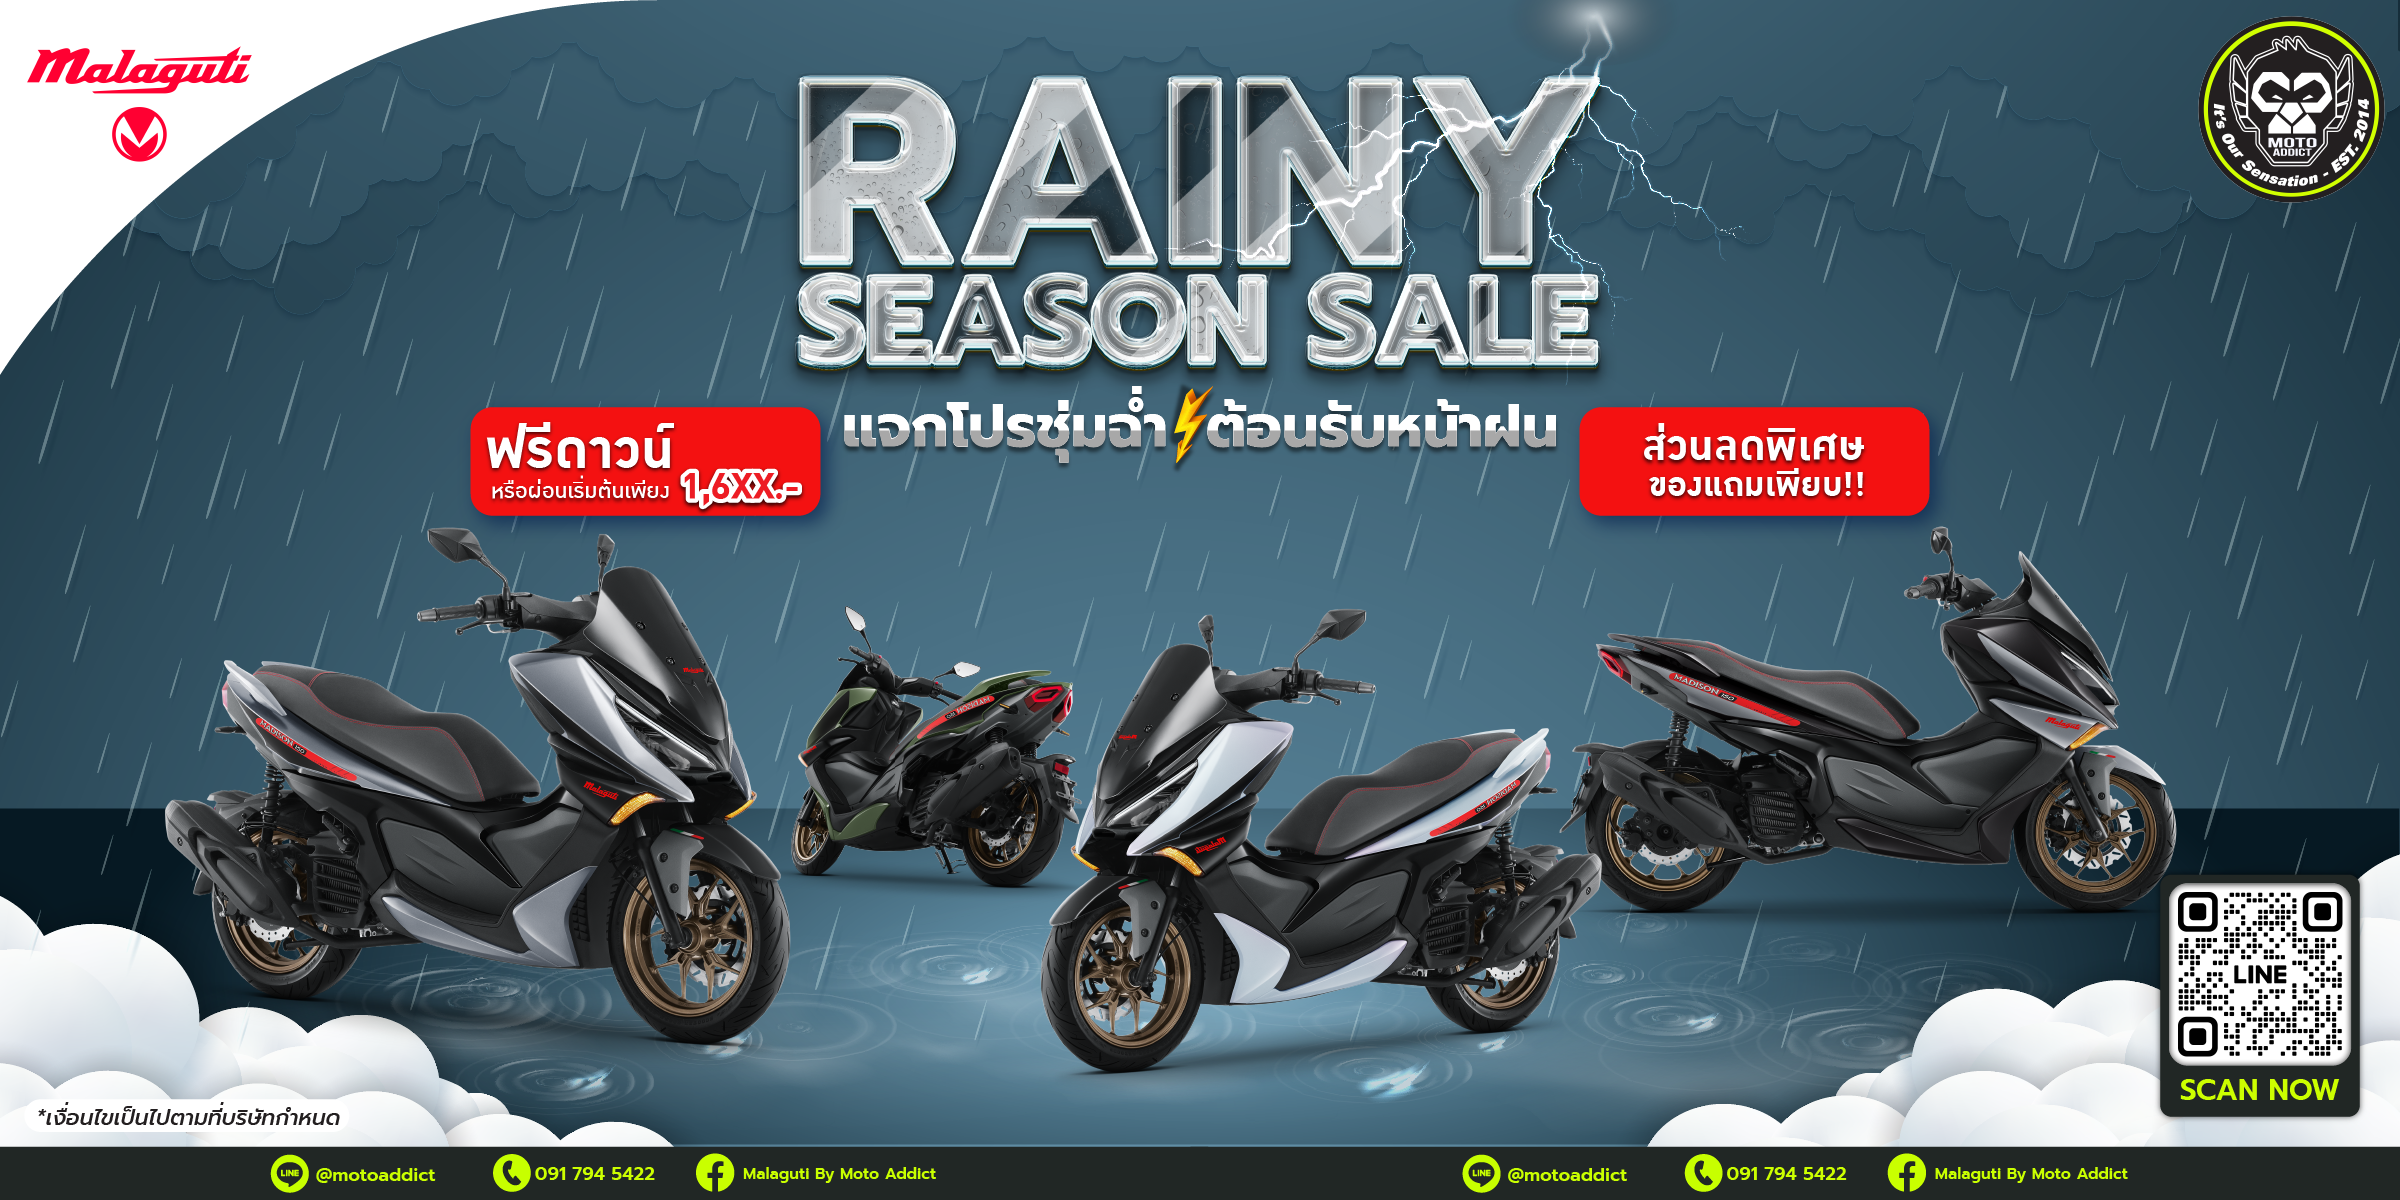 Rainy Season Sales Malaguti แจกโปรชุ่มฉ่ำ ต้อนรับหน้าฝน